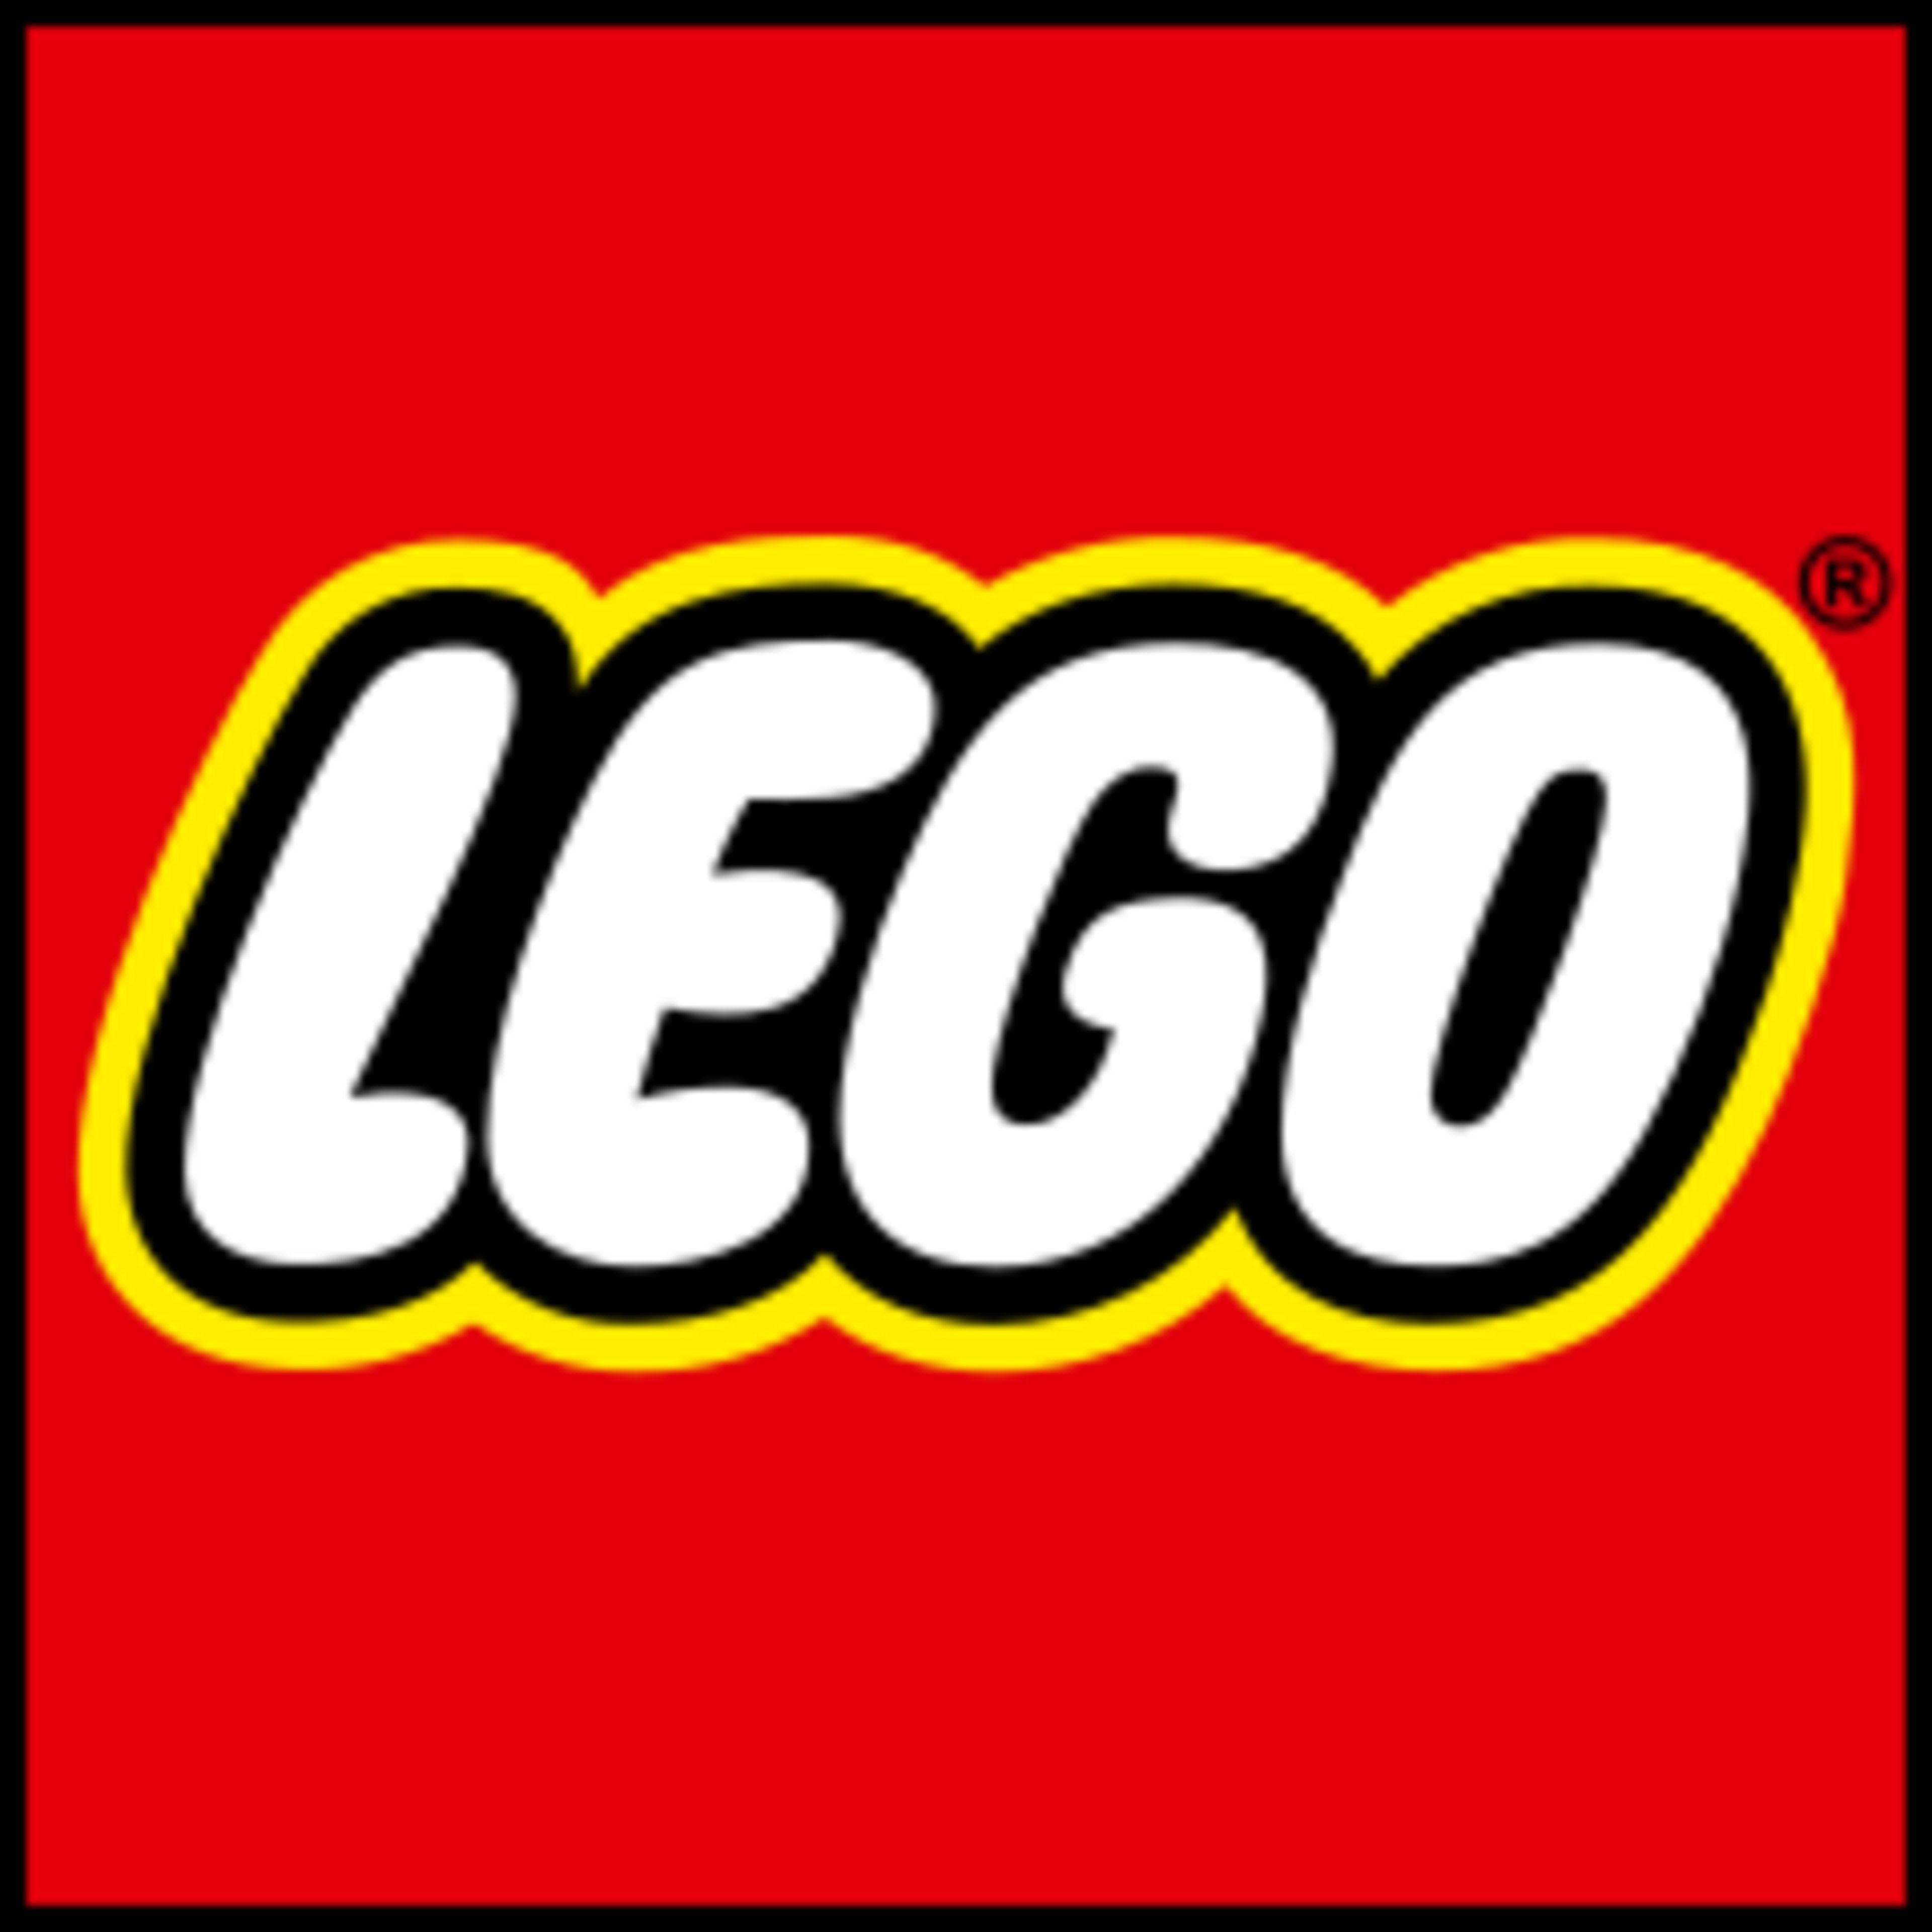 LEGOCode